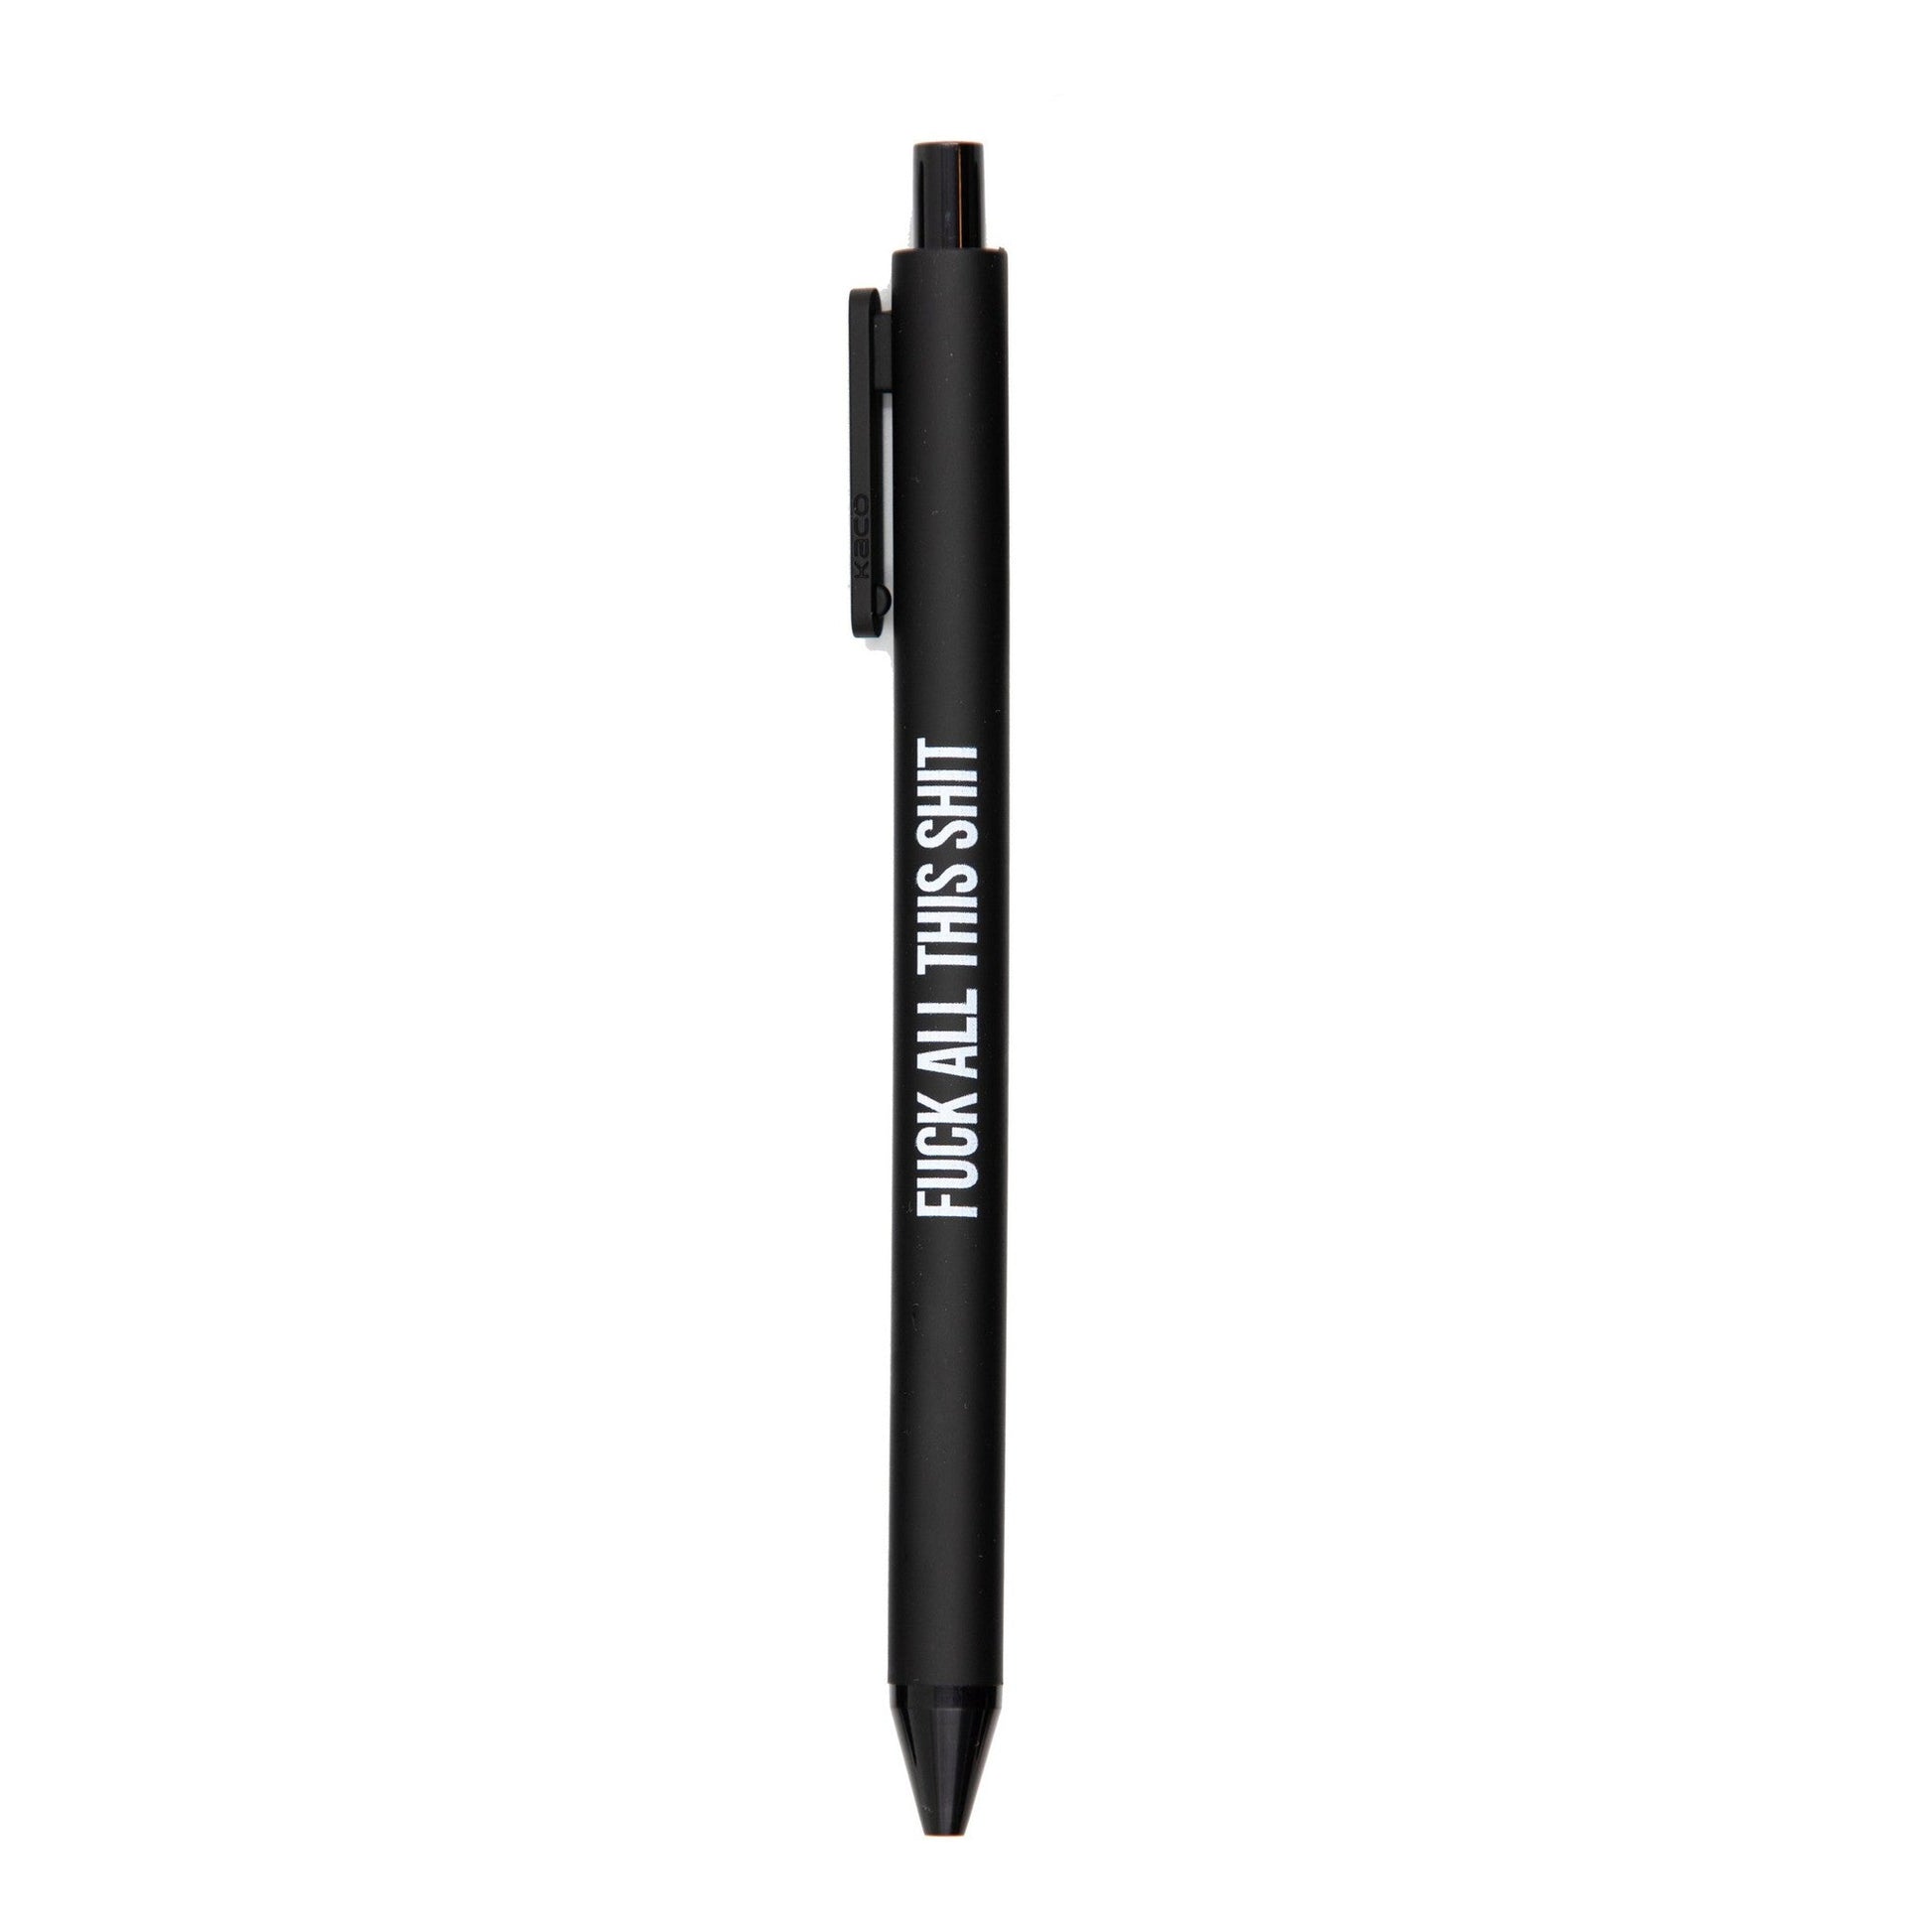 M-F Pens Bad Word Pens Glitter Pens Black Ink Pens -  Sweden